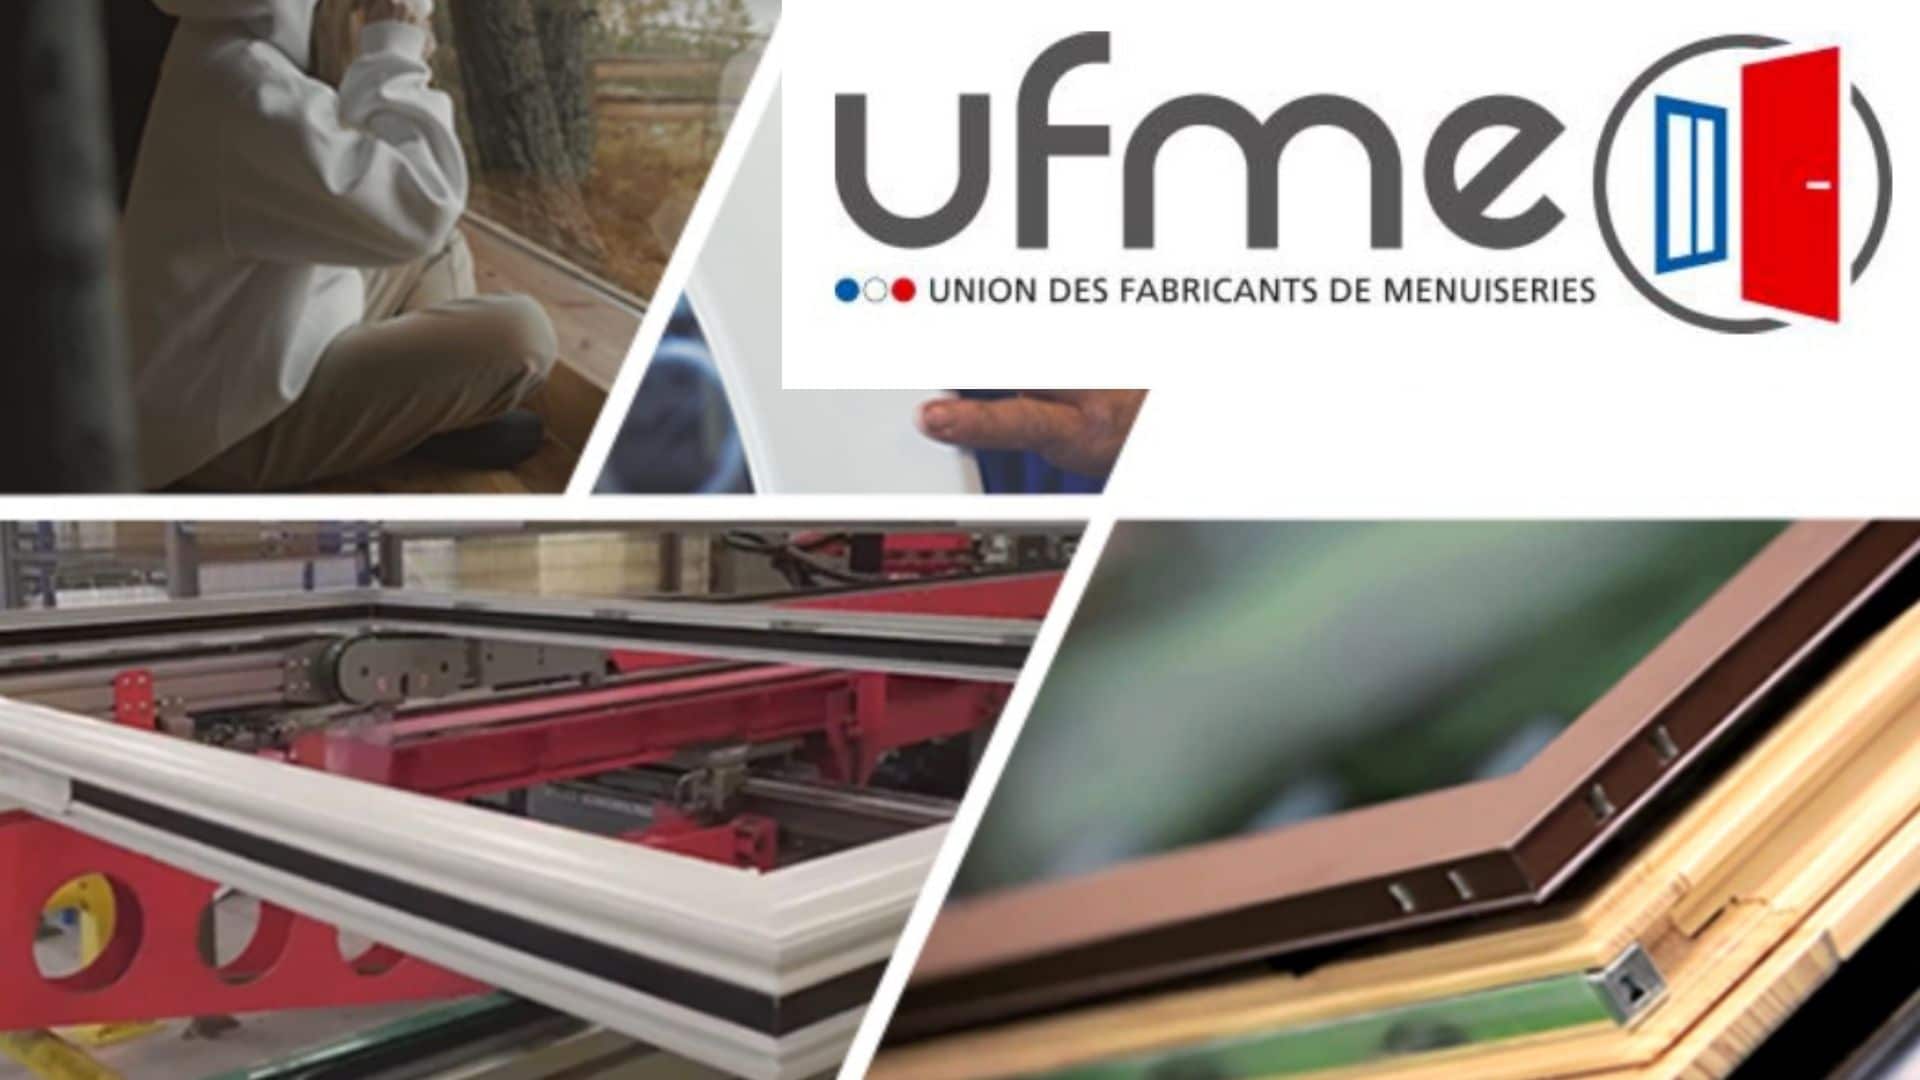 L’UFME maintient le cap d’une Convention Collective moderne et dynamique : une reconnaissance forte de l’indépendance et de la modernisation des métiers de la menuiserie industrielle